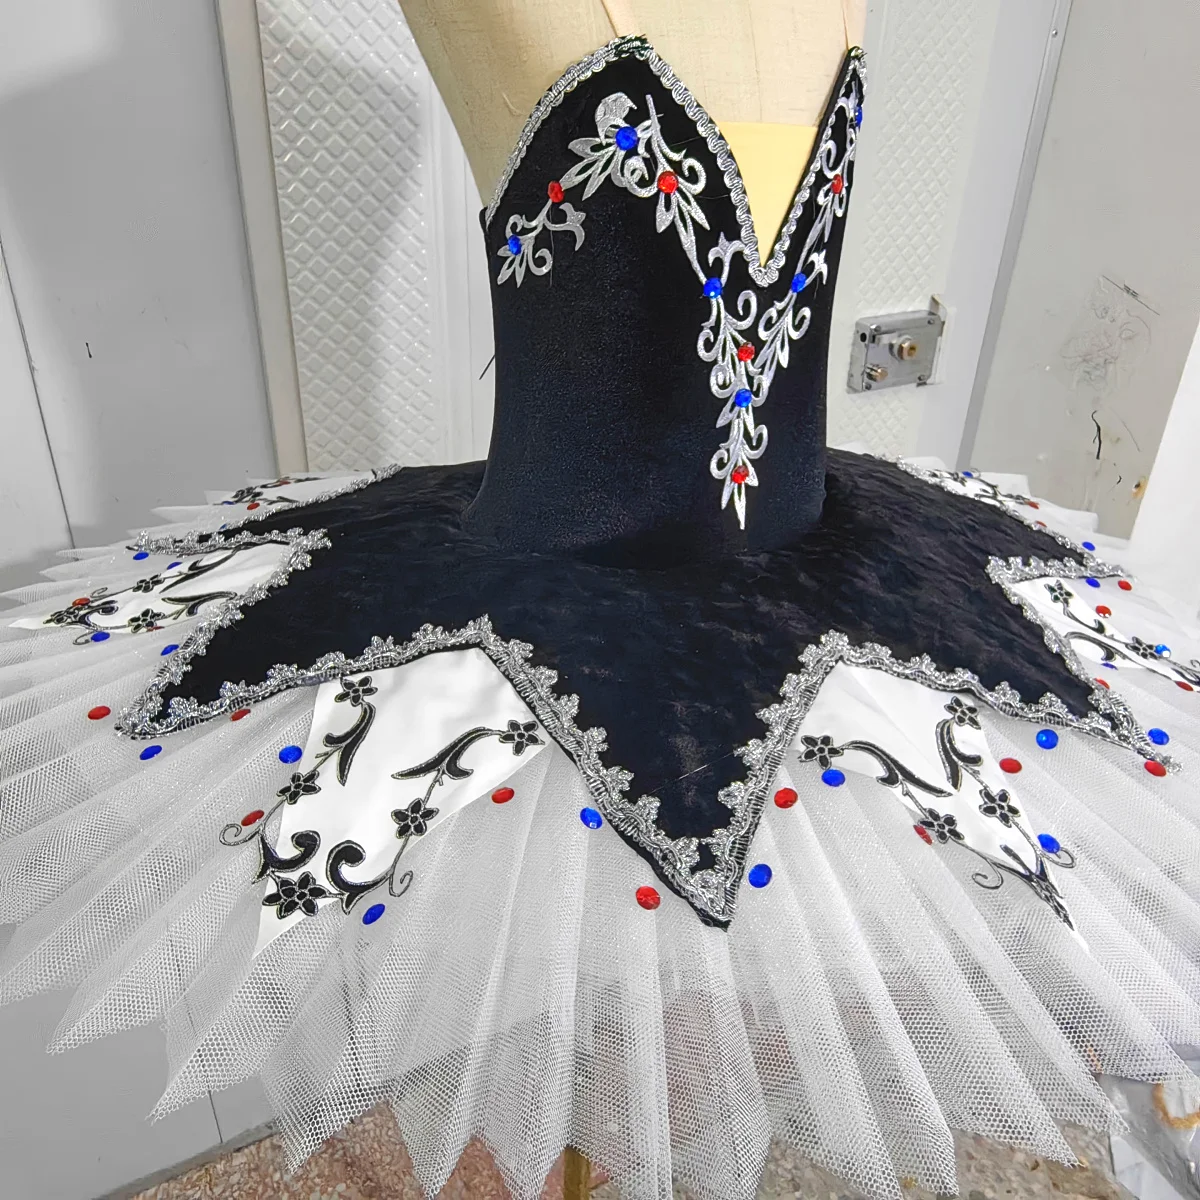 New Arrived Children's Ballet Tutu Skirt Costumes White Swan  Performance Clothing Leotards for Girls